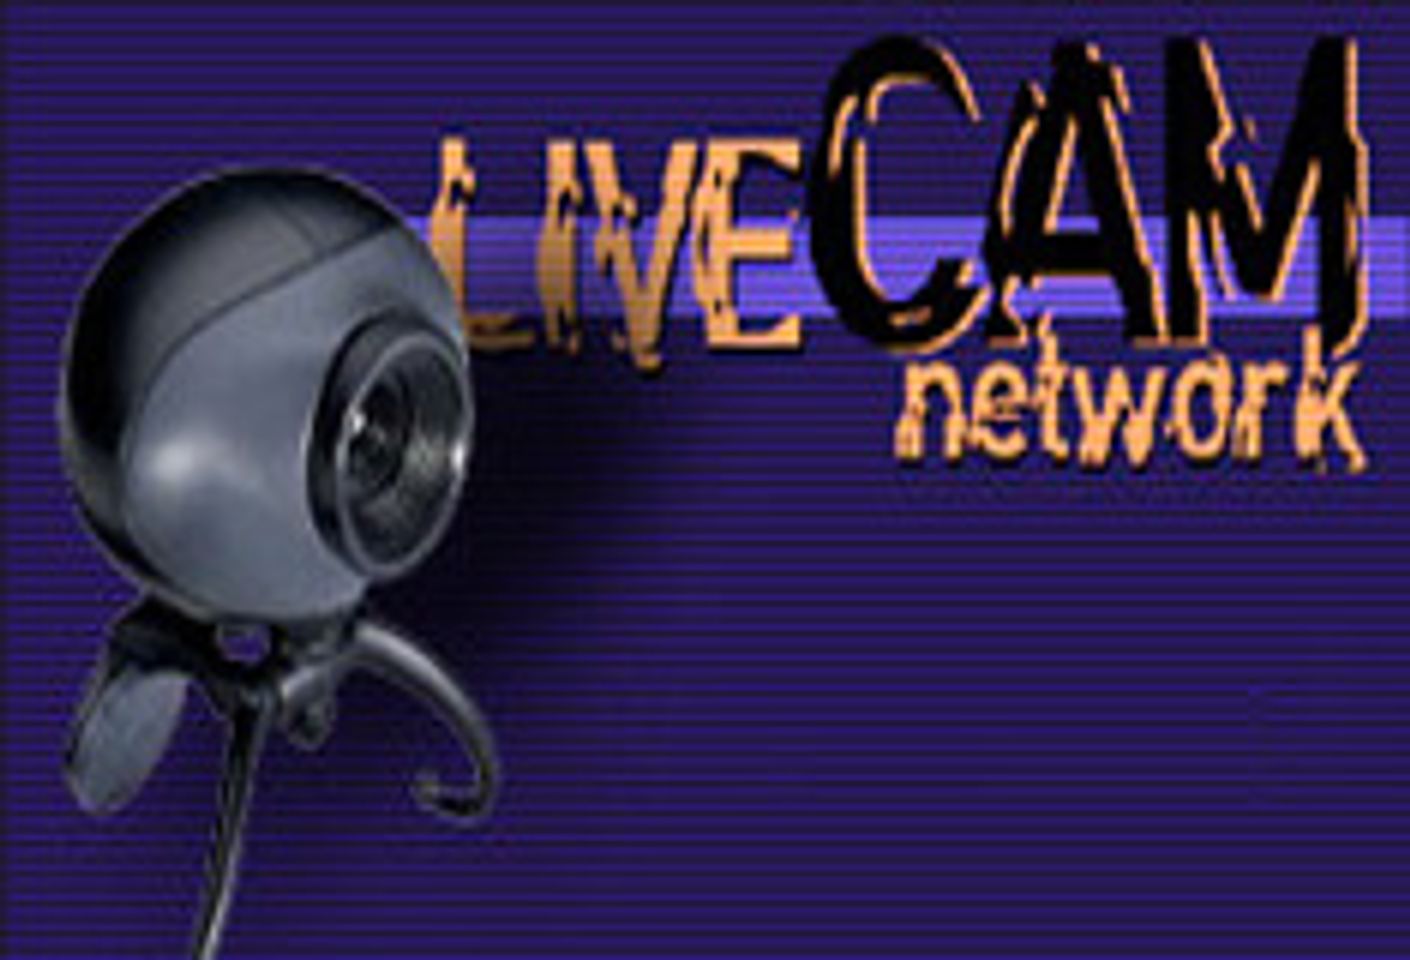 LiveCamNetwork.com Expands Hostess Roster, Adds Studios